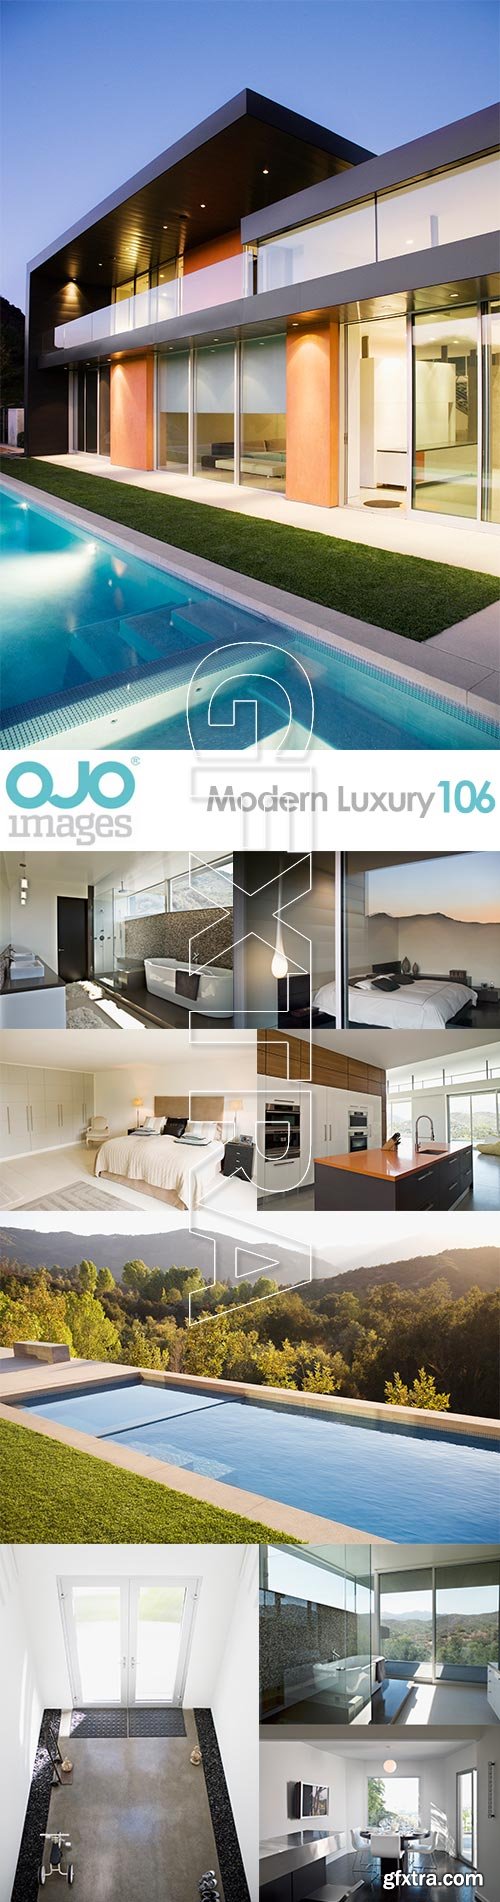 OJO Images OJ106 Modern Luxury